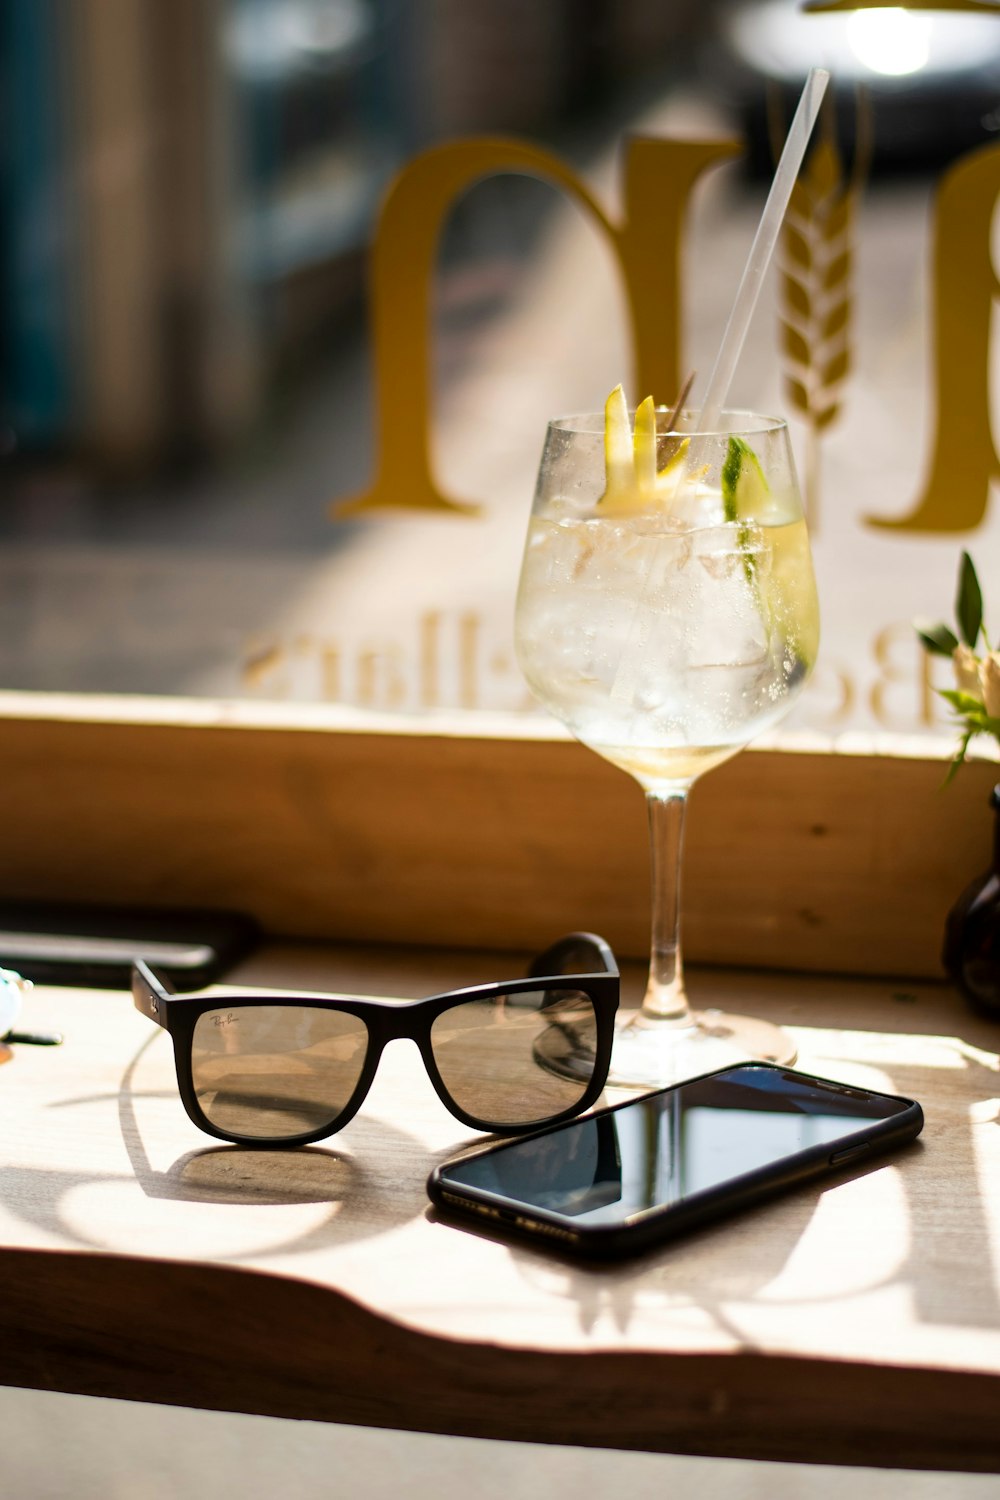 Foto zum Thema Smartphone, Wayfarer-Sonnenbrille und Weinglas auf Tablett –  Kostenloses Bild zu Vereinigtes Königreich auf Unsplash